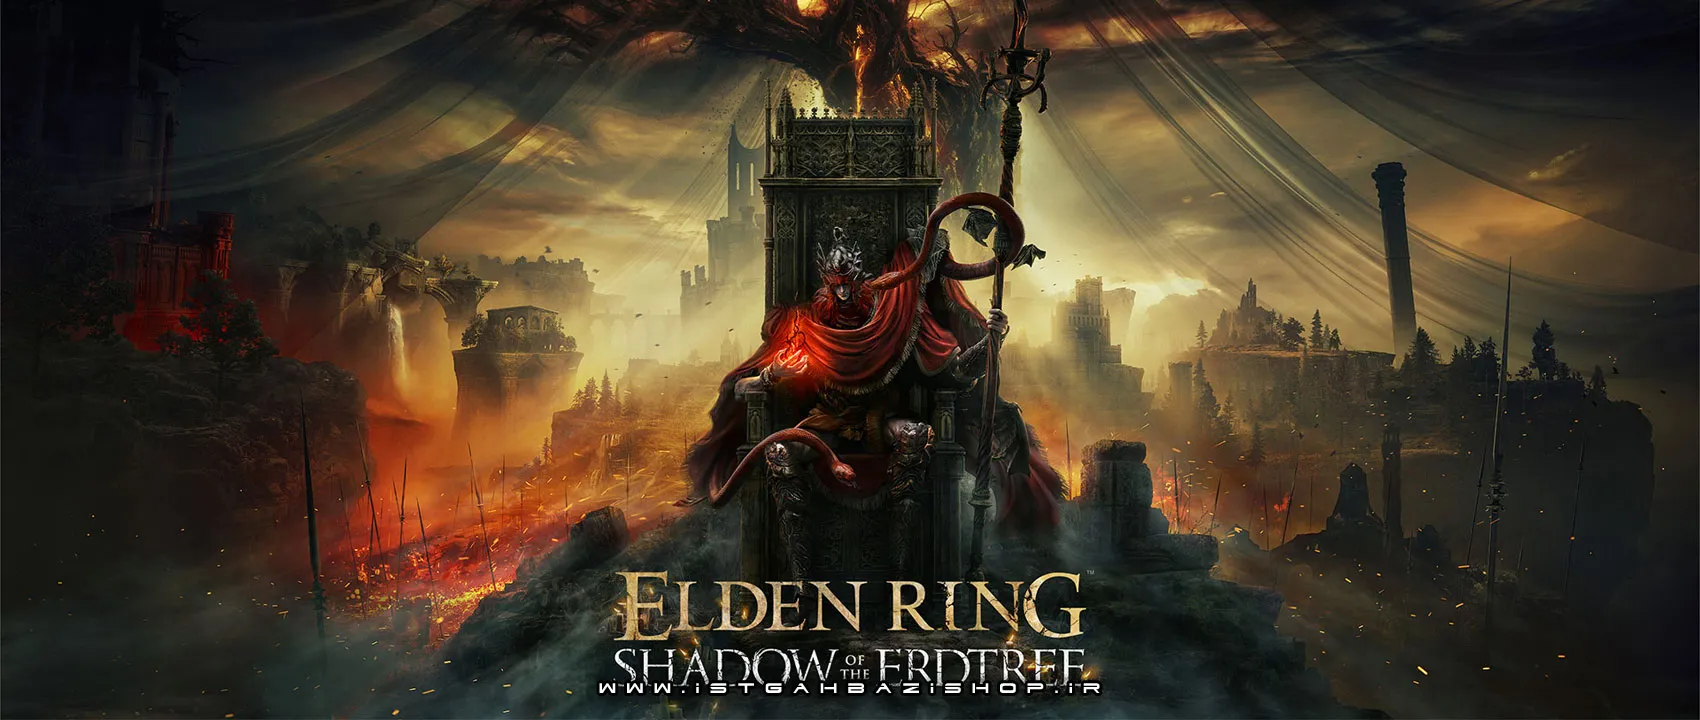 Elden Ring Shadow of the Erdtree Ps4